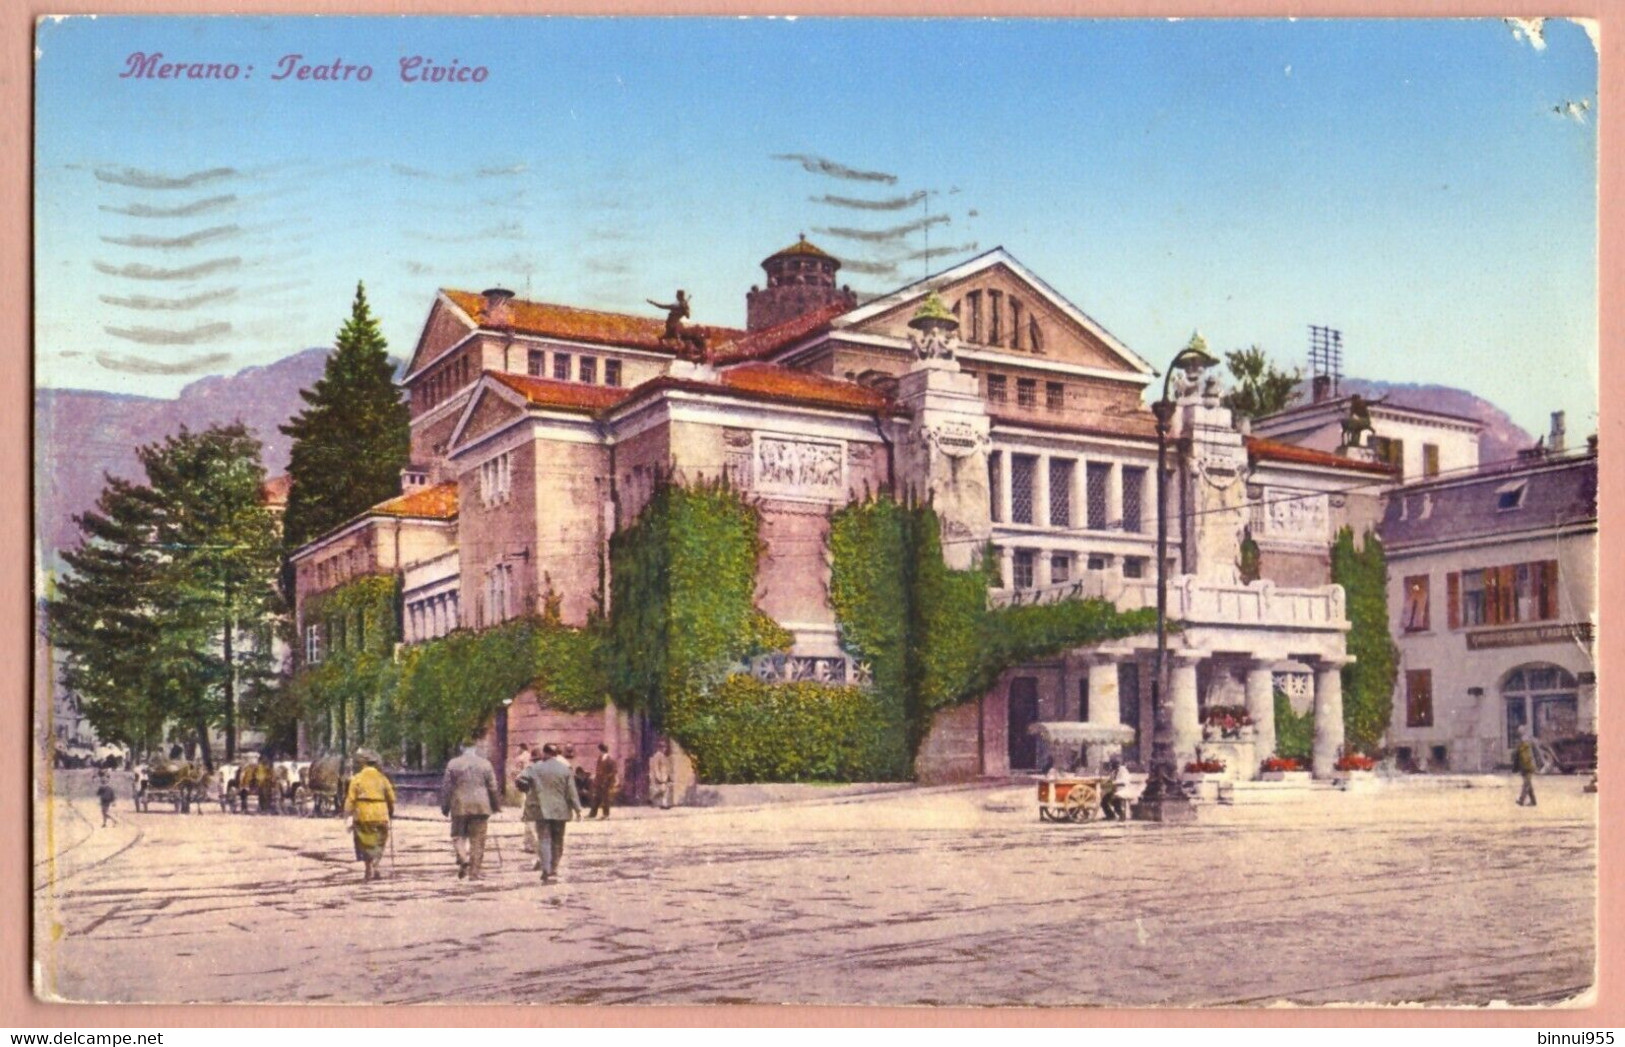 Cartolina Merano Teatro Civico Animata - Viaggiata - 1942 - Merano